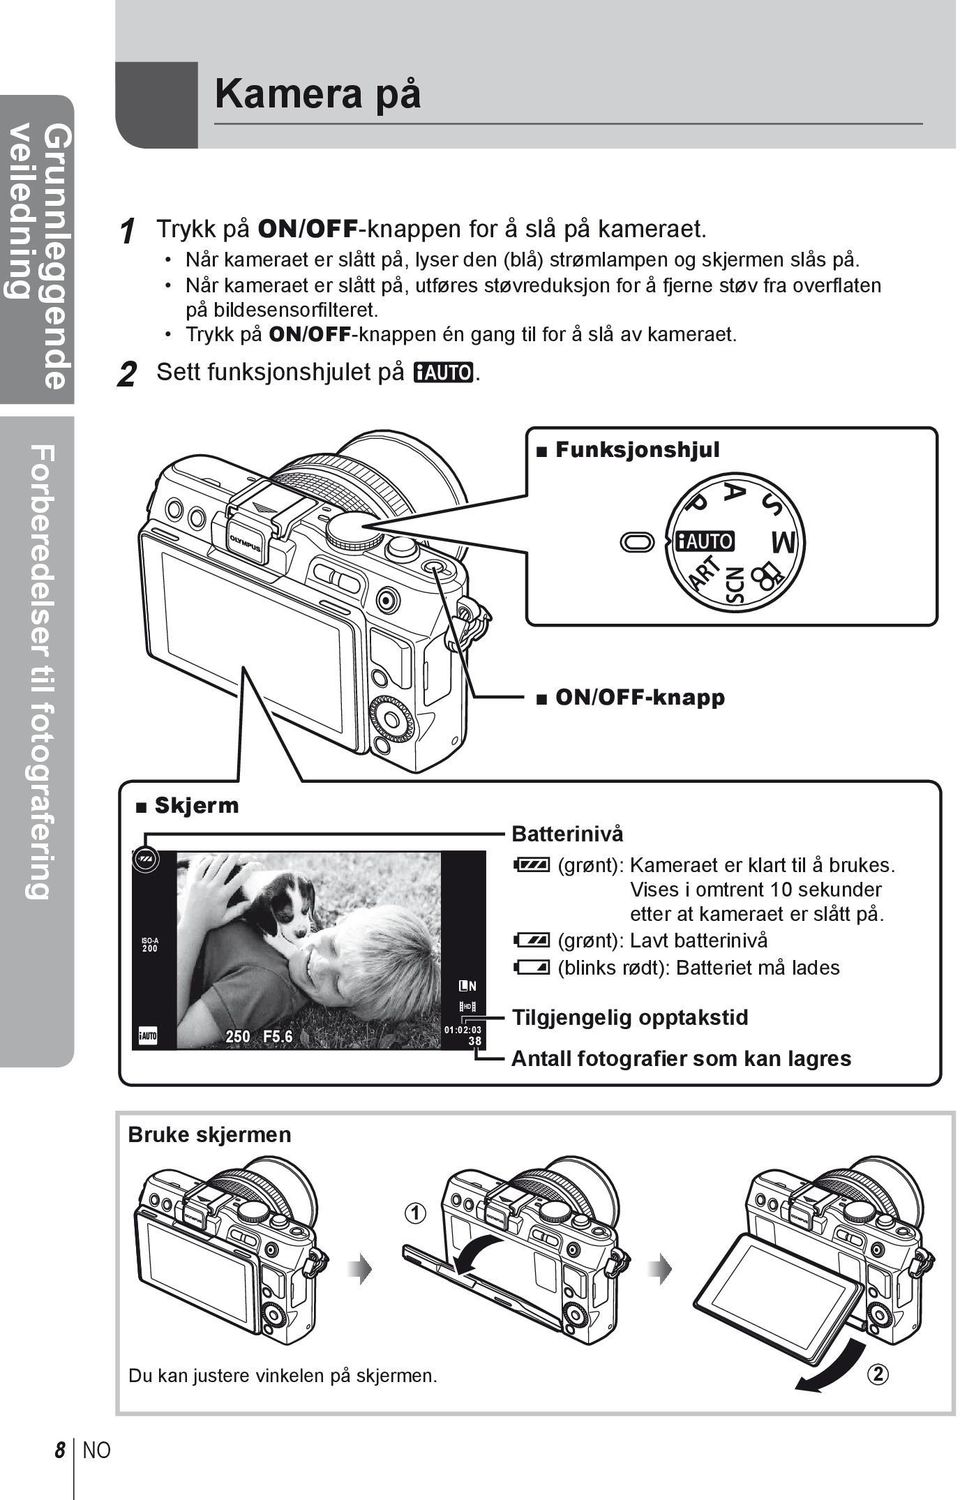 2 t funksjonshjulet på A. Forberedelser til fotografering Skjerm ISO-A 200 L N Funksjonshjul ON/OFF-knapp Batterinivå 7 (grønt): Kameraet er klart til å brukes.